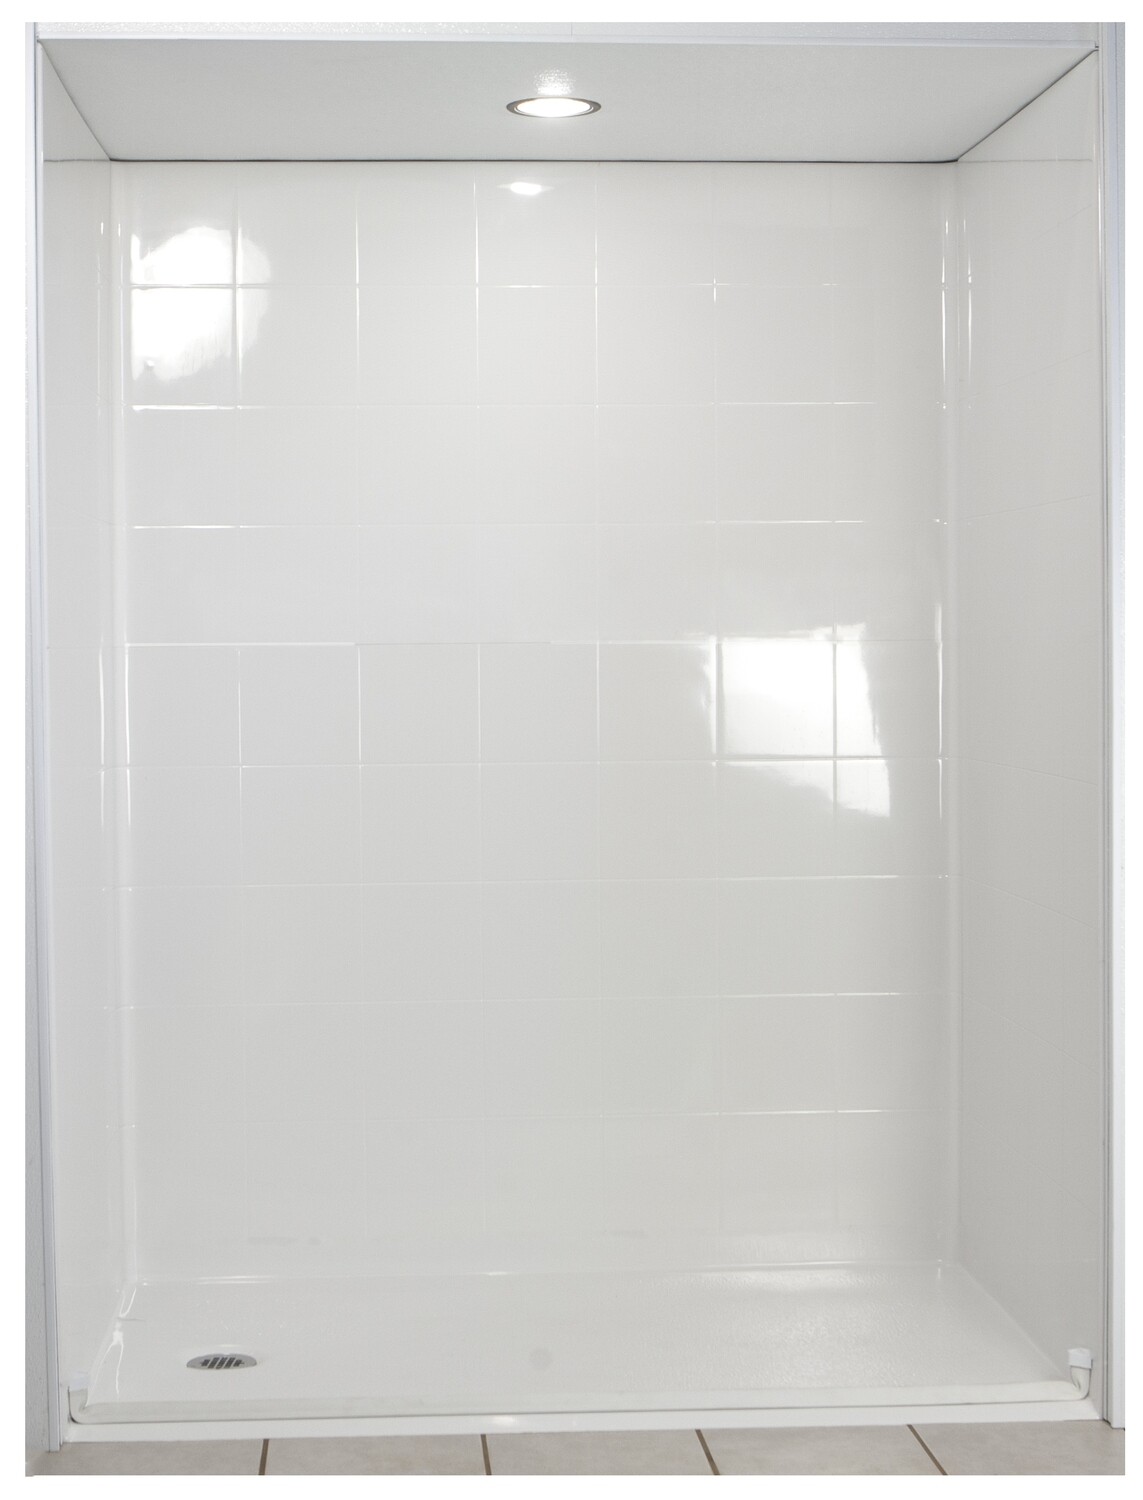 Standard Multi-Piece Barrier Free Roll In Shower AcrylX (Full Standard Kit)